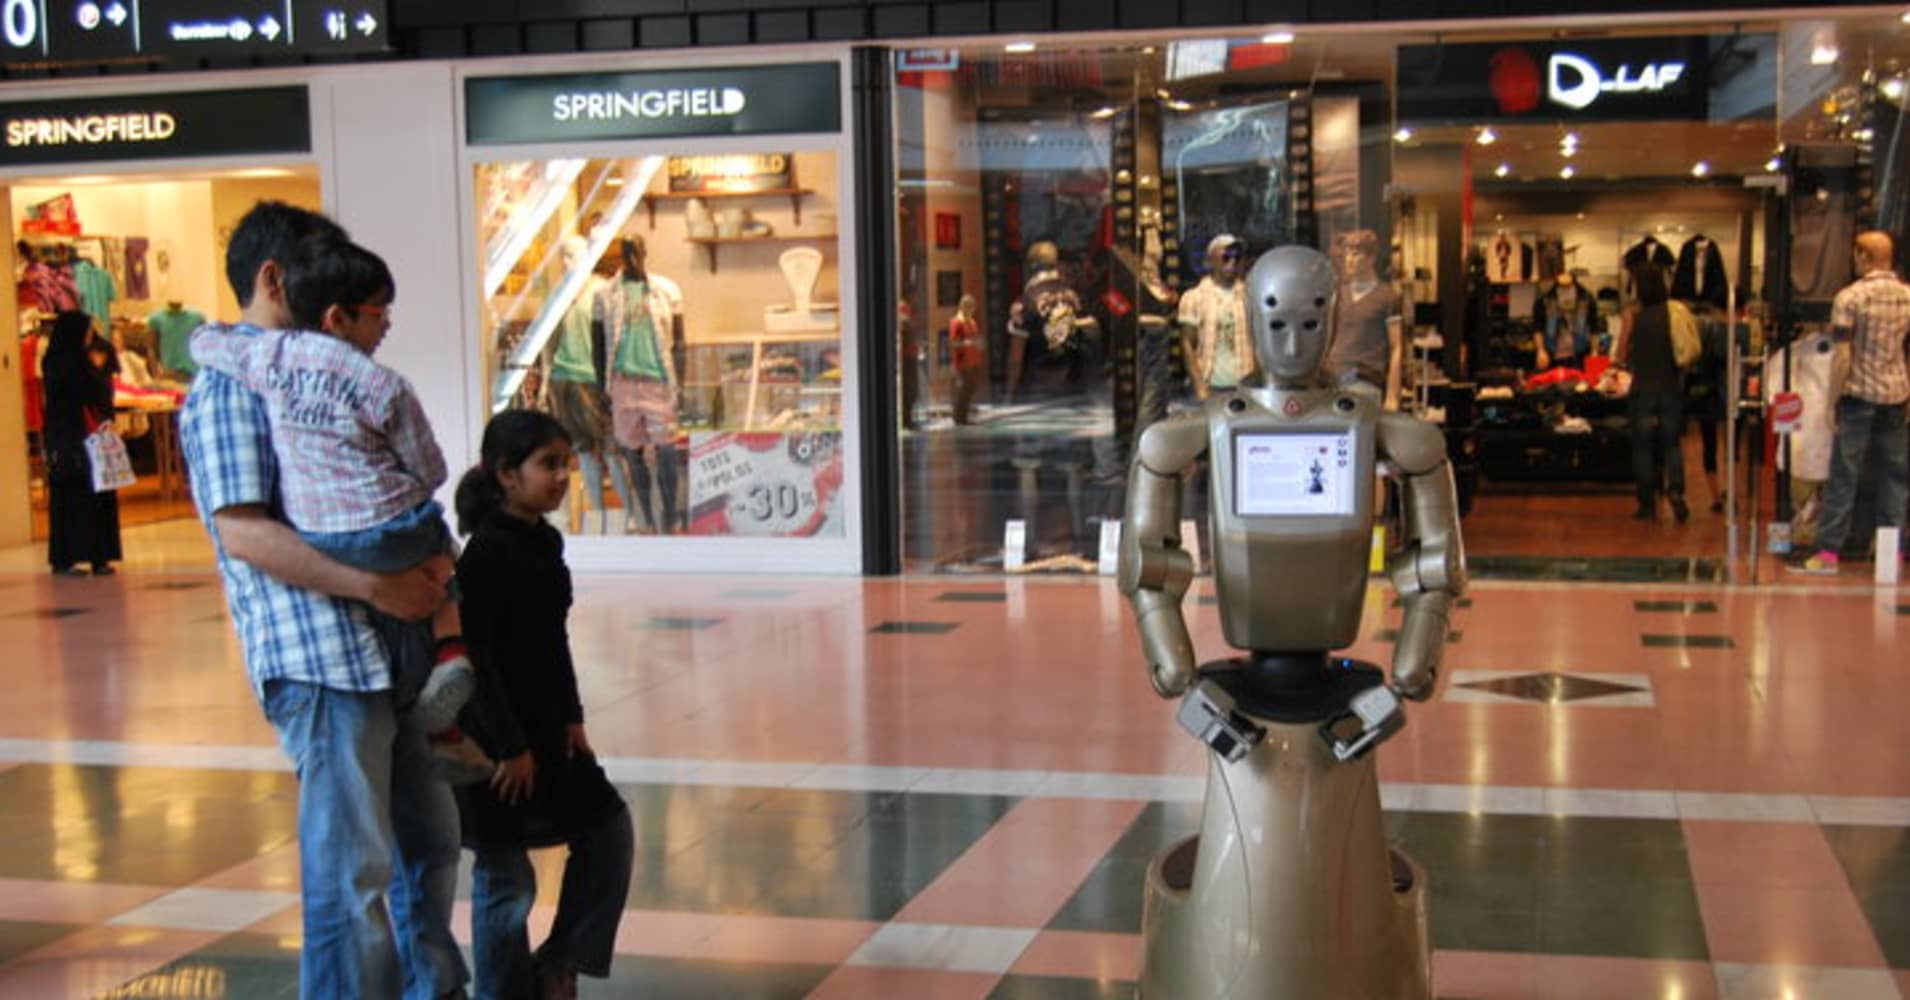 М5 молл роботы. Робот Молл. Робот магазина Power. Boilerplate робот. Робот и шопинг картинки.